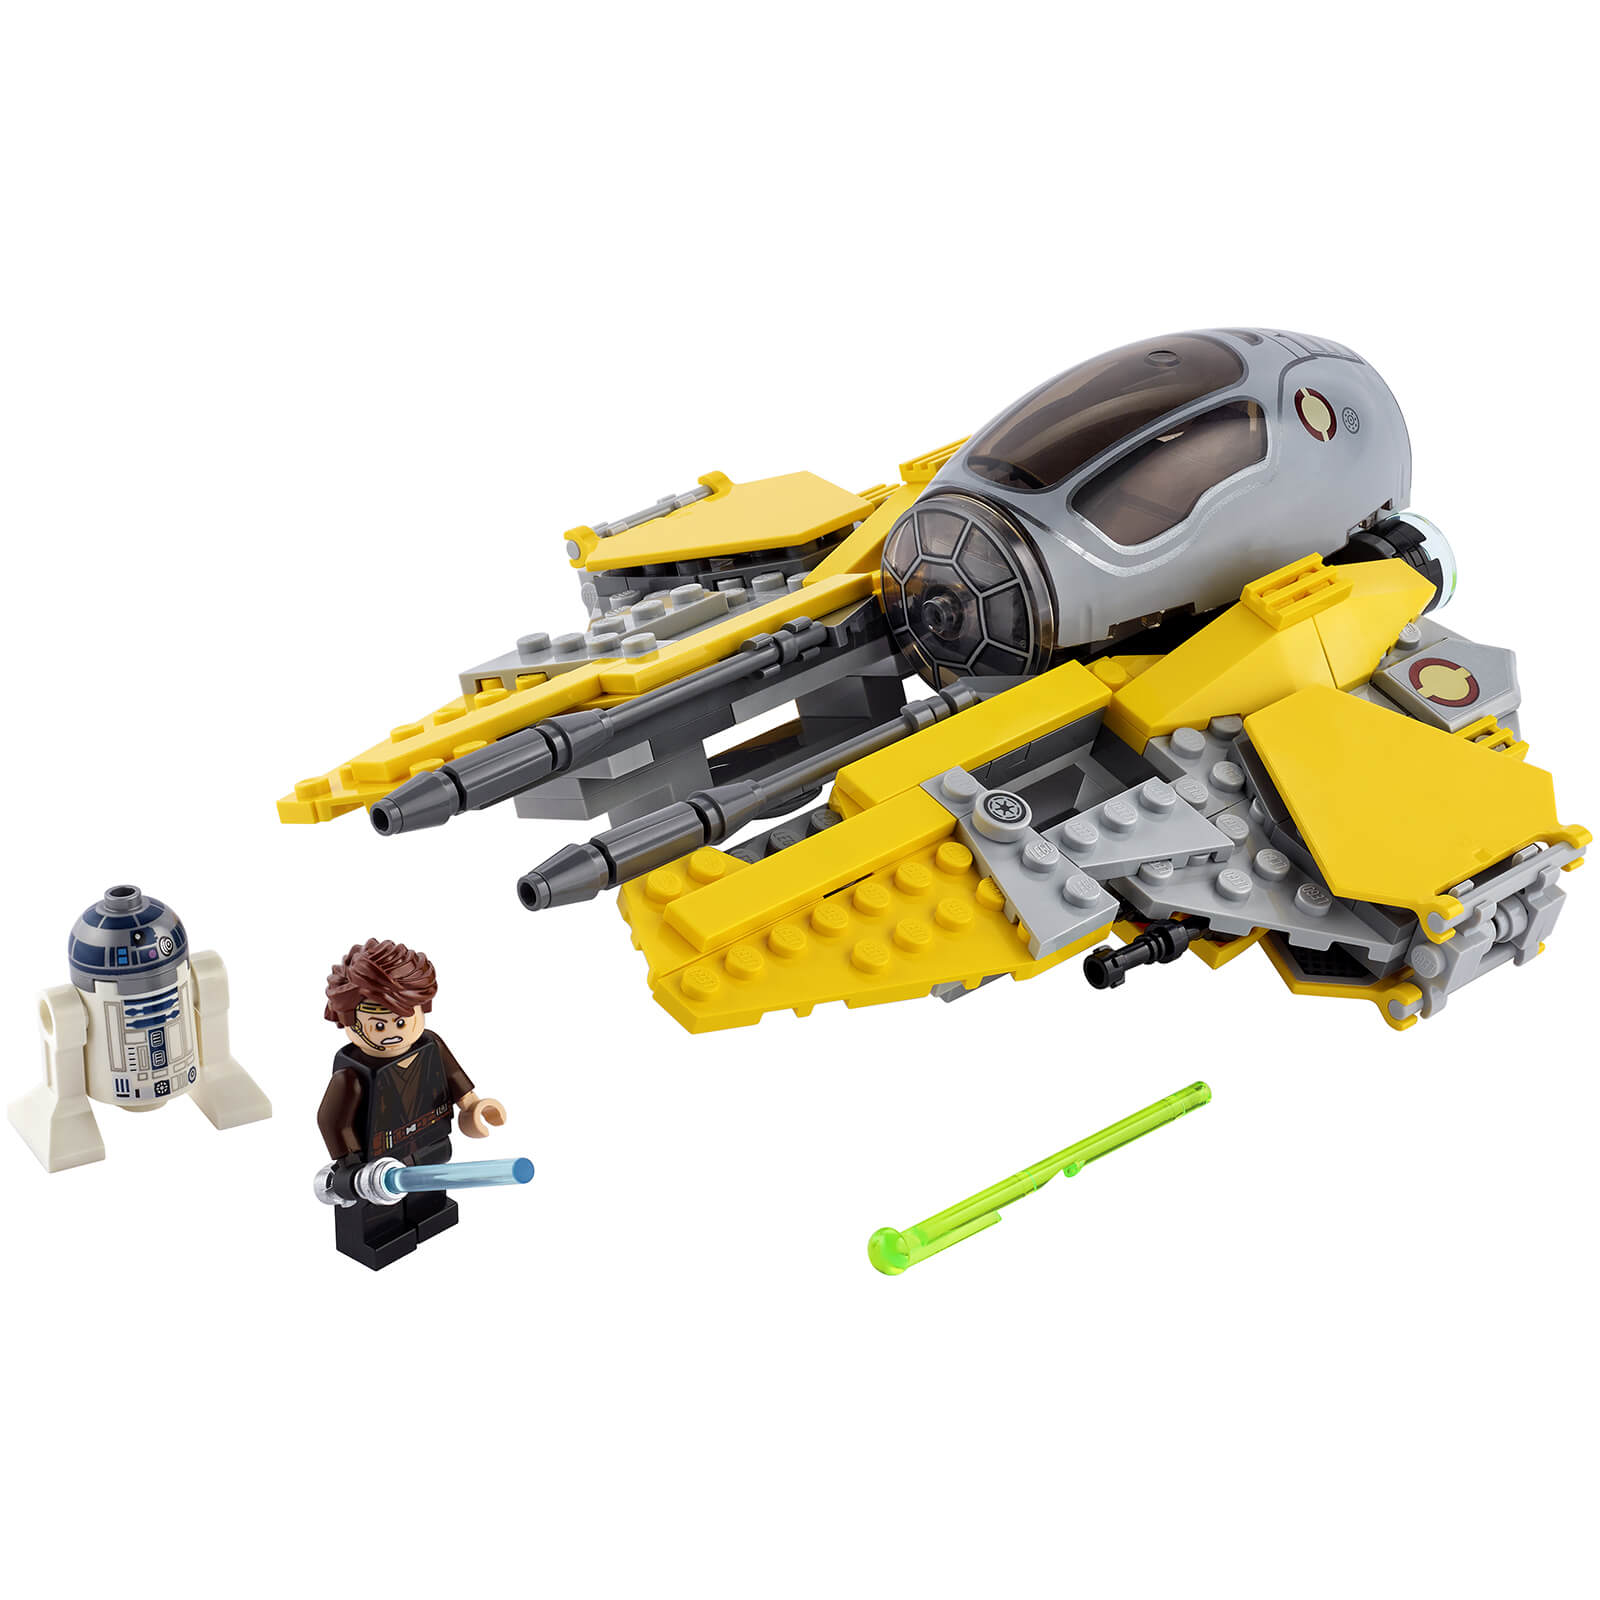 LEGO Star Wars: Anakin's Jedi Interceptor Toy (75281)